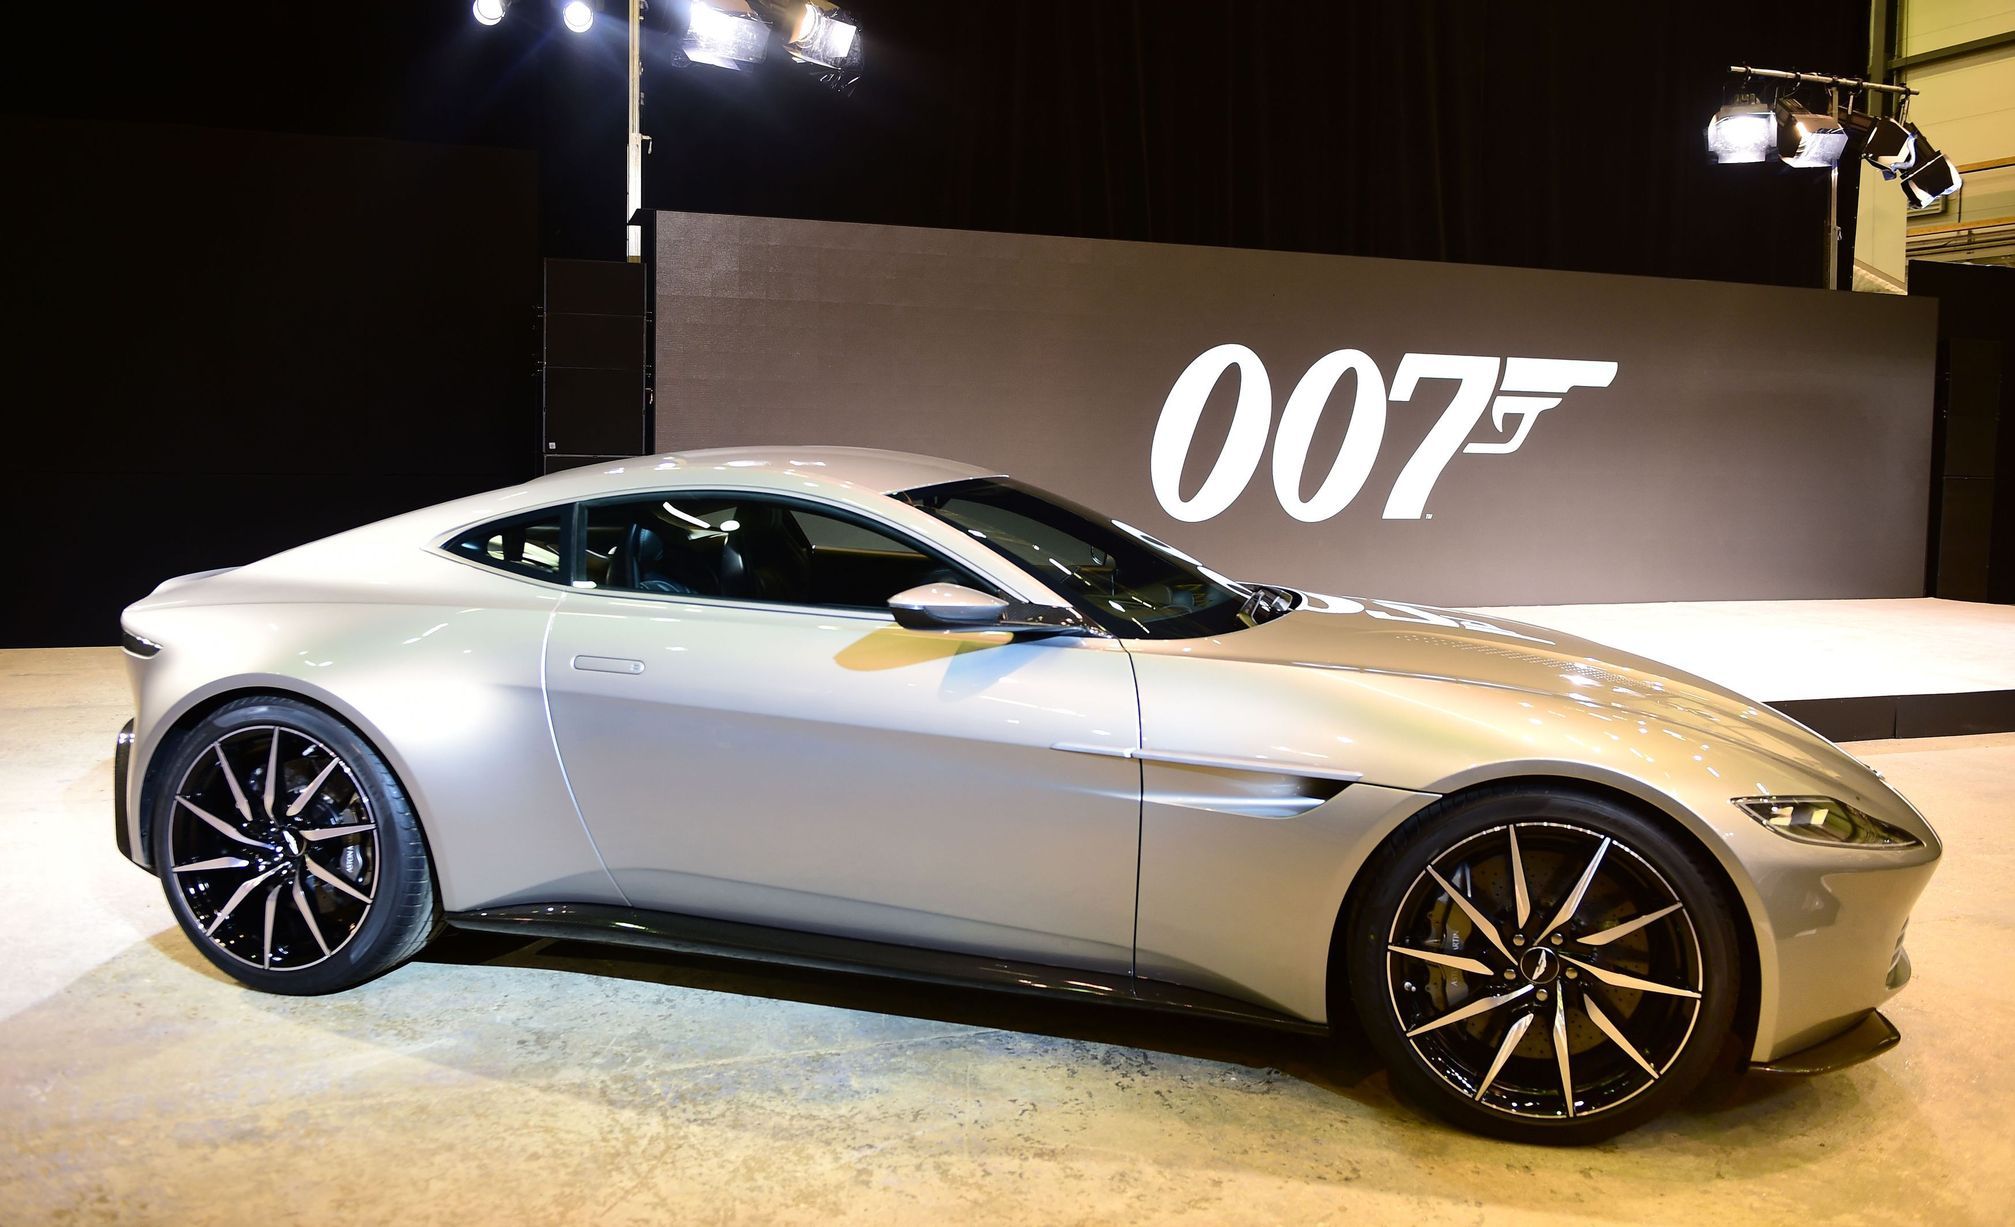 Aston Martin's Bond with 007 Movies